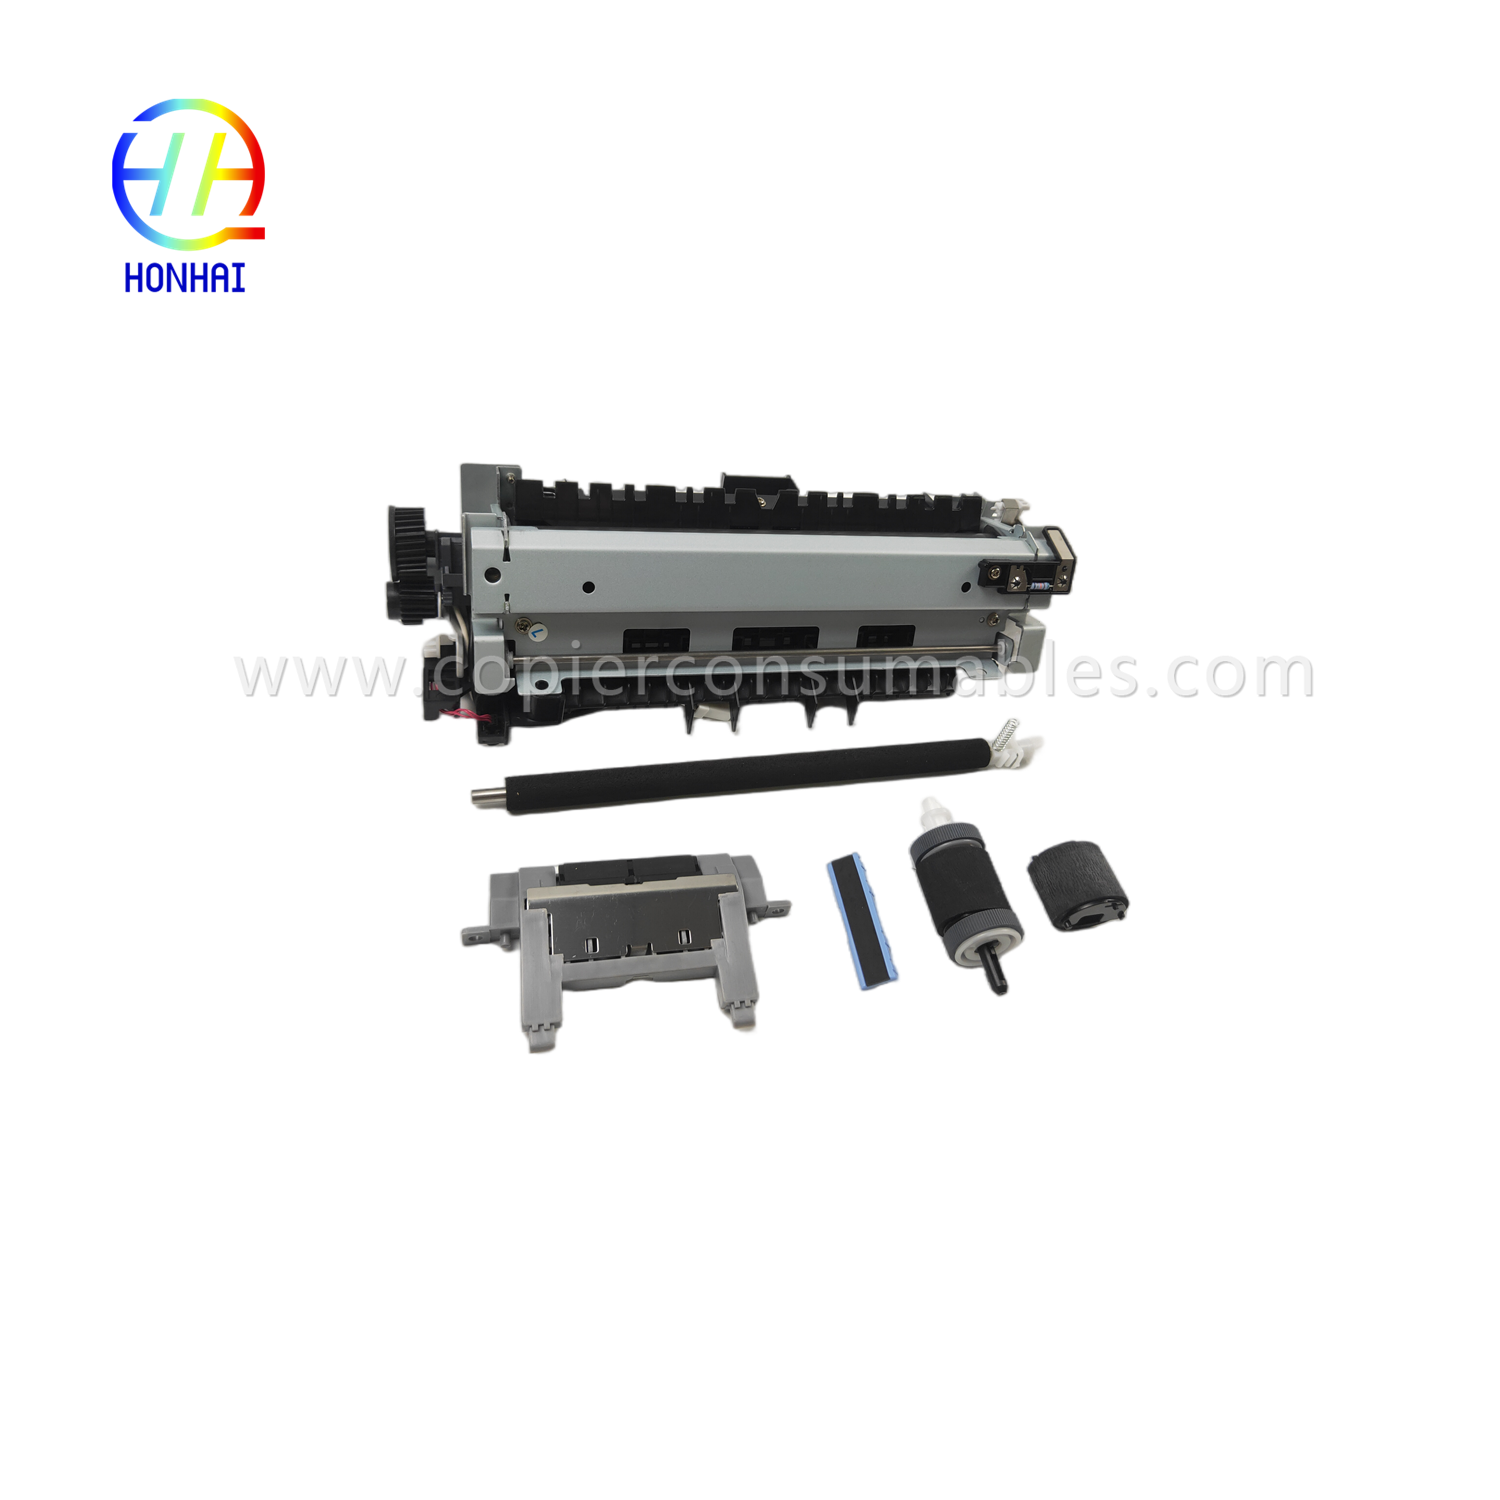 https://c585.goodao.net/maintenance-kit-220v-japan-for-hp-cf116-67903-laserjet-enterprise-500-mfp-m525-flow-mfp-m525c-pro-mfp-m521-includes- fuser-transfer-roller-tray-1-separation-pad-tray-2-roller-tray-2-separation-pad-product/